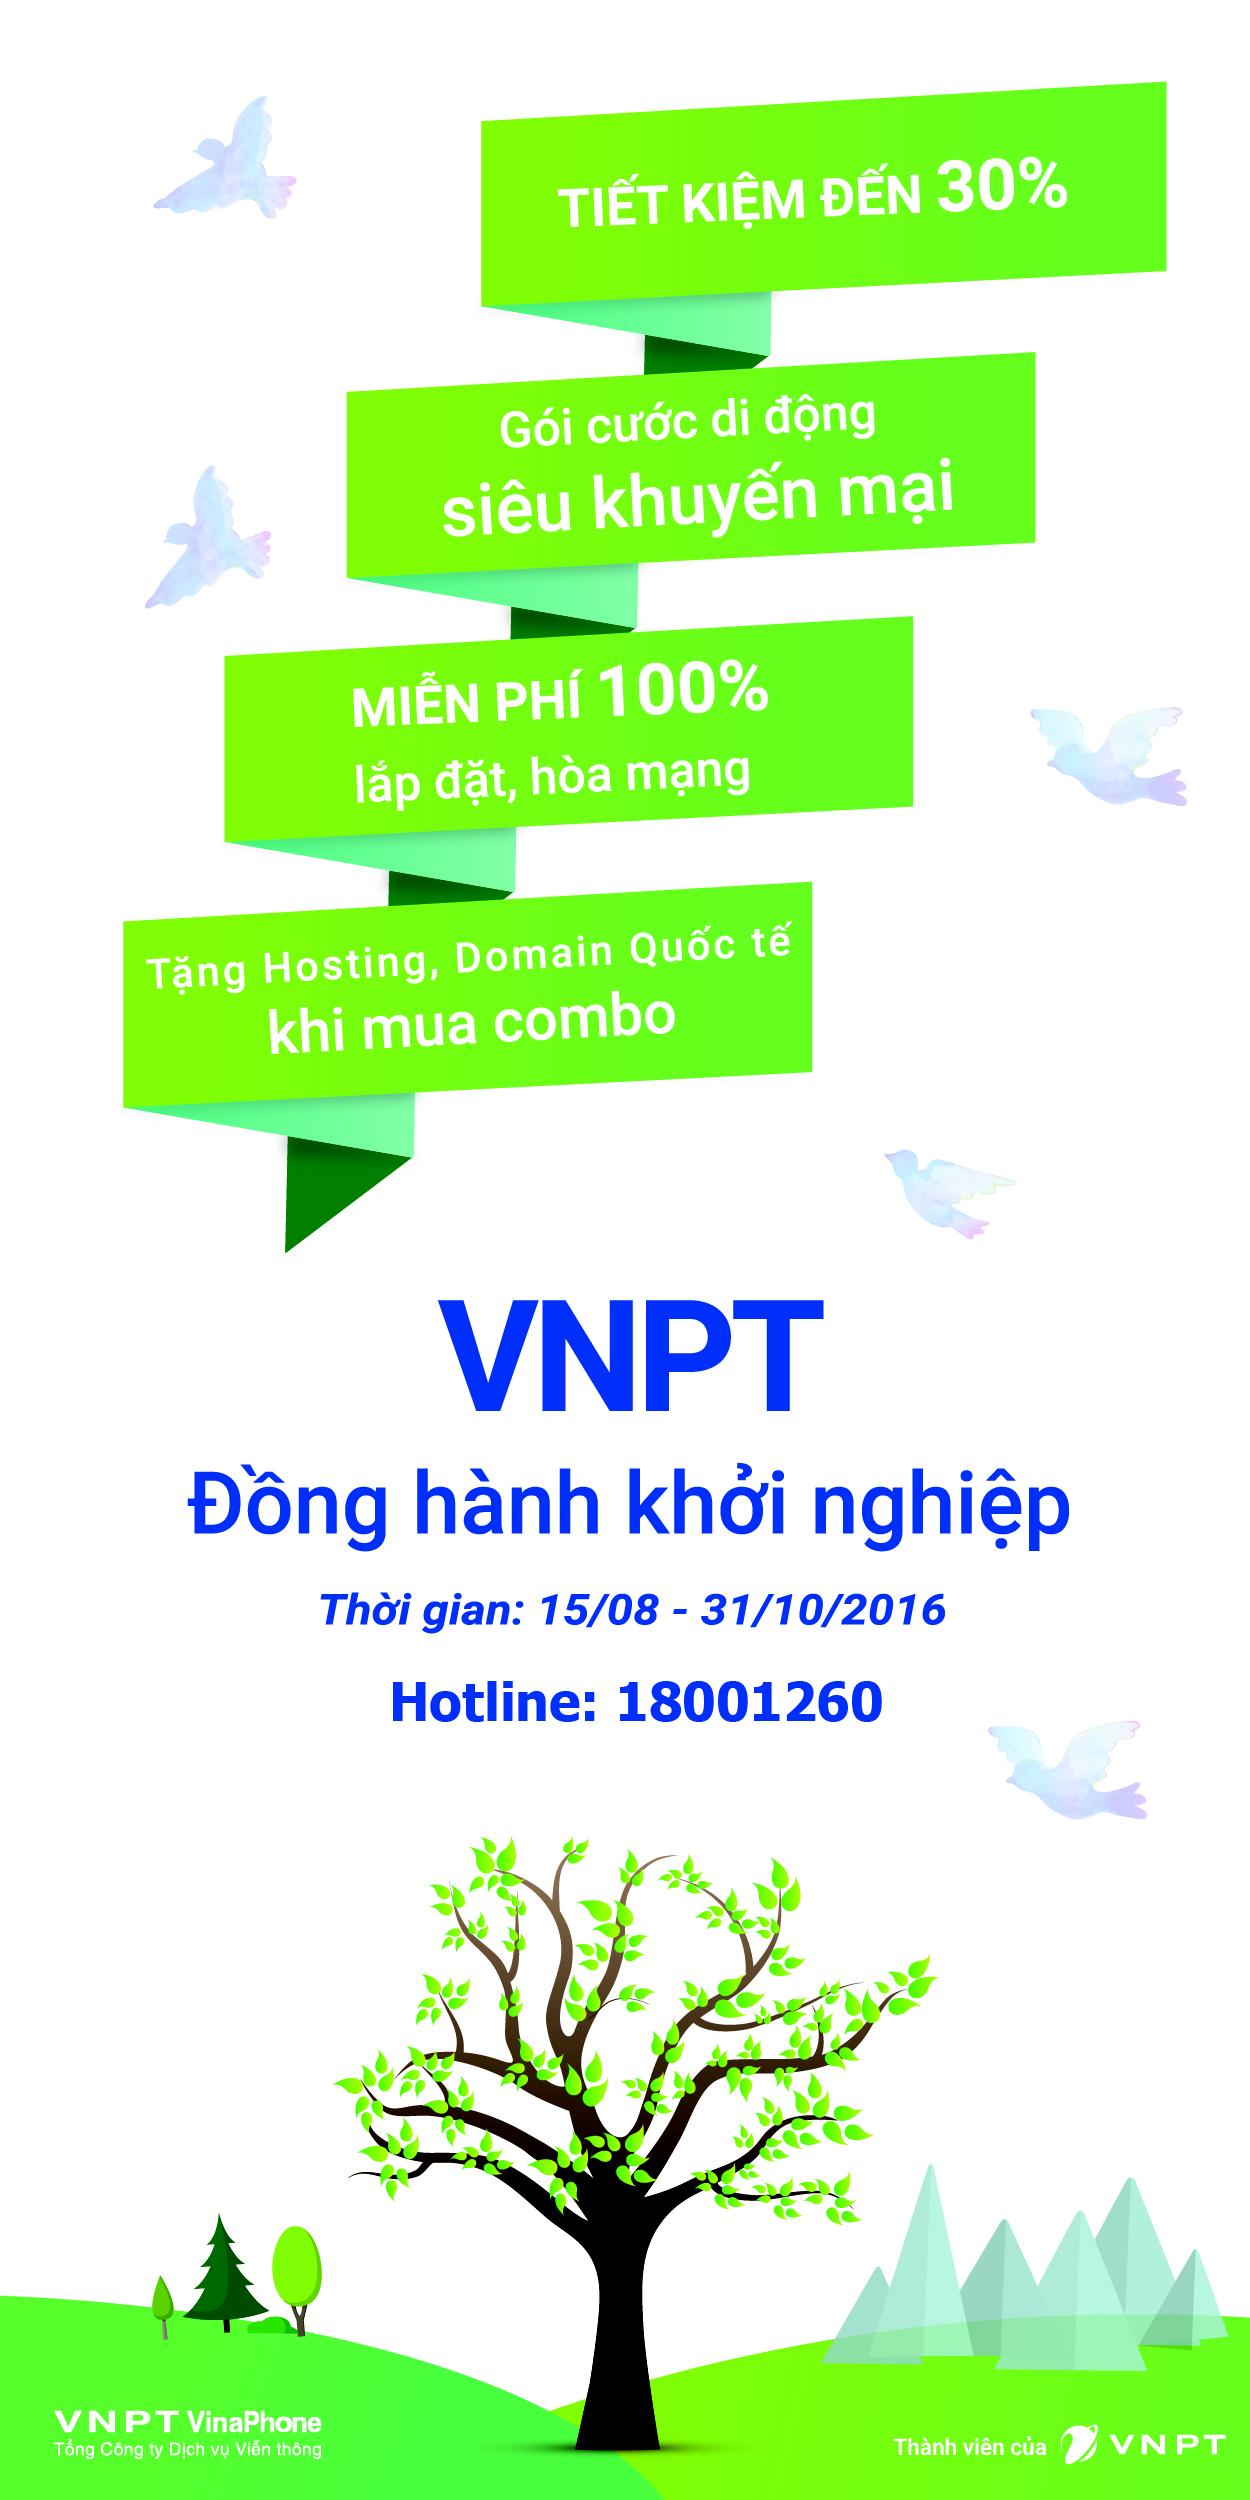 Ưu đãi đặc biệt của VNPT cho các doanh nghiệp